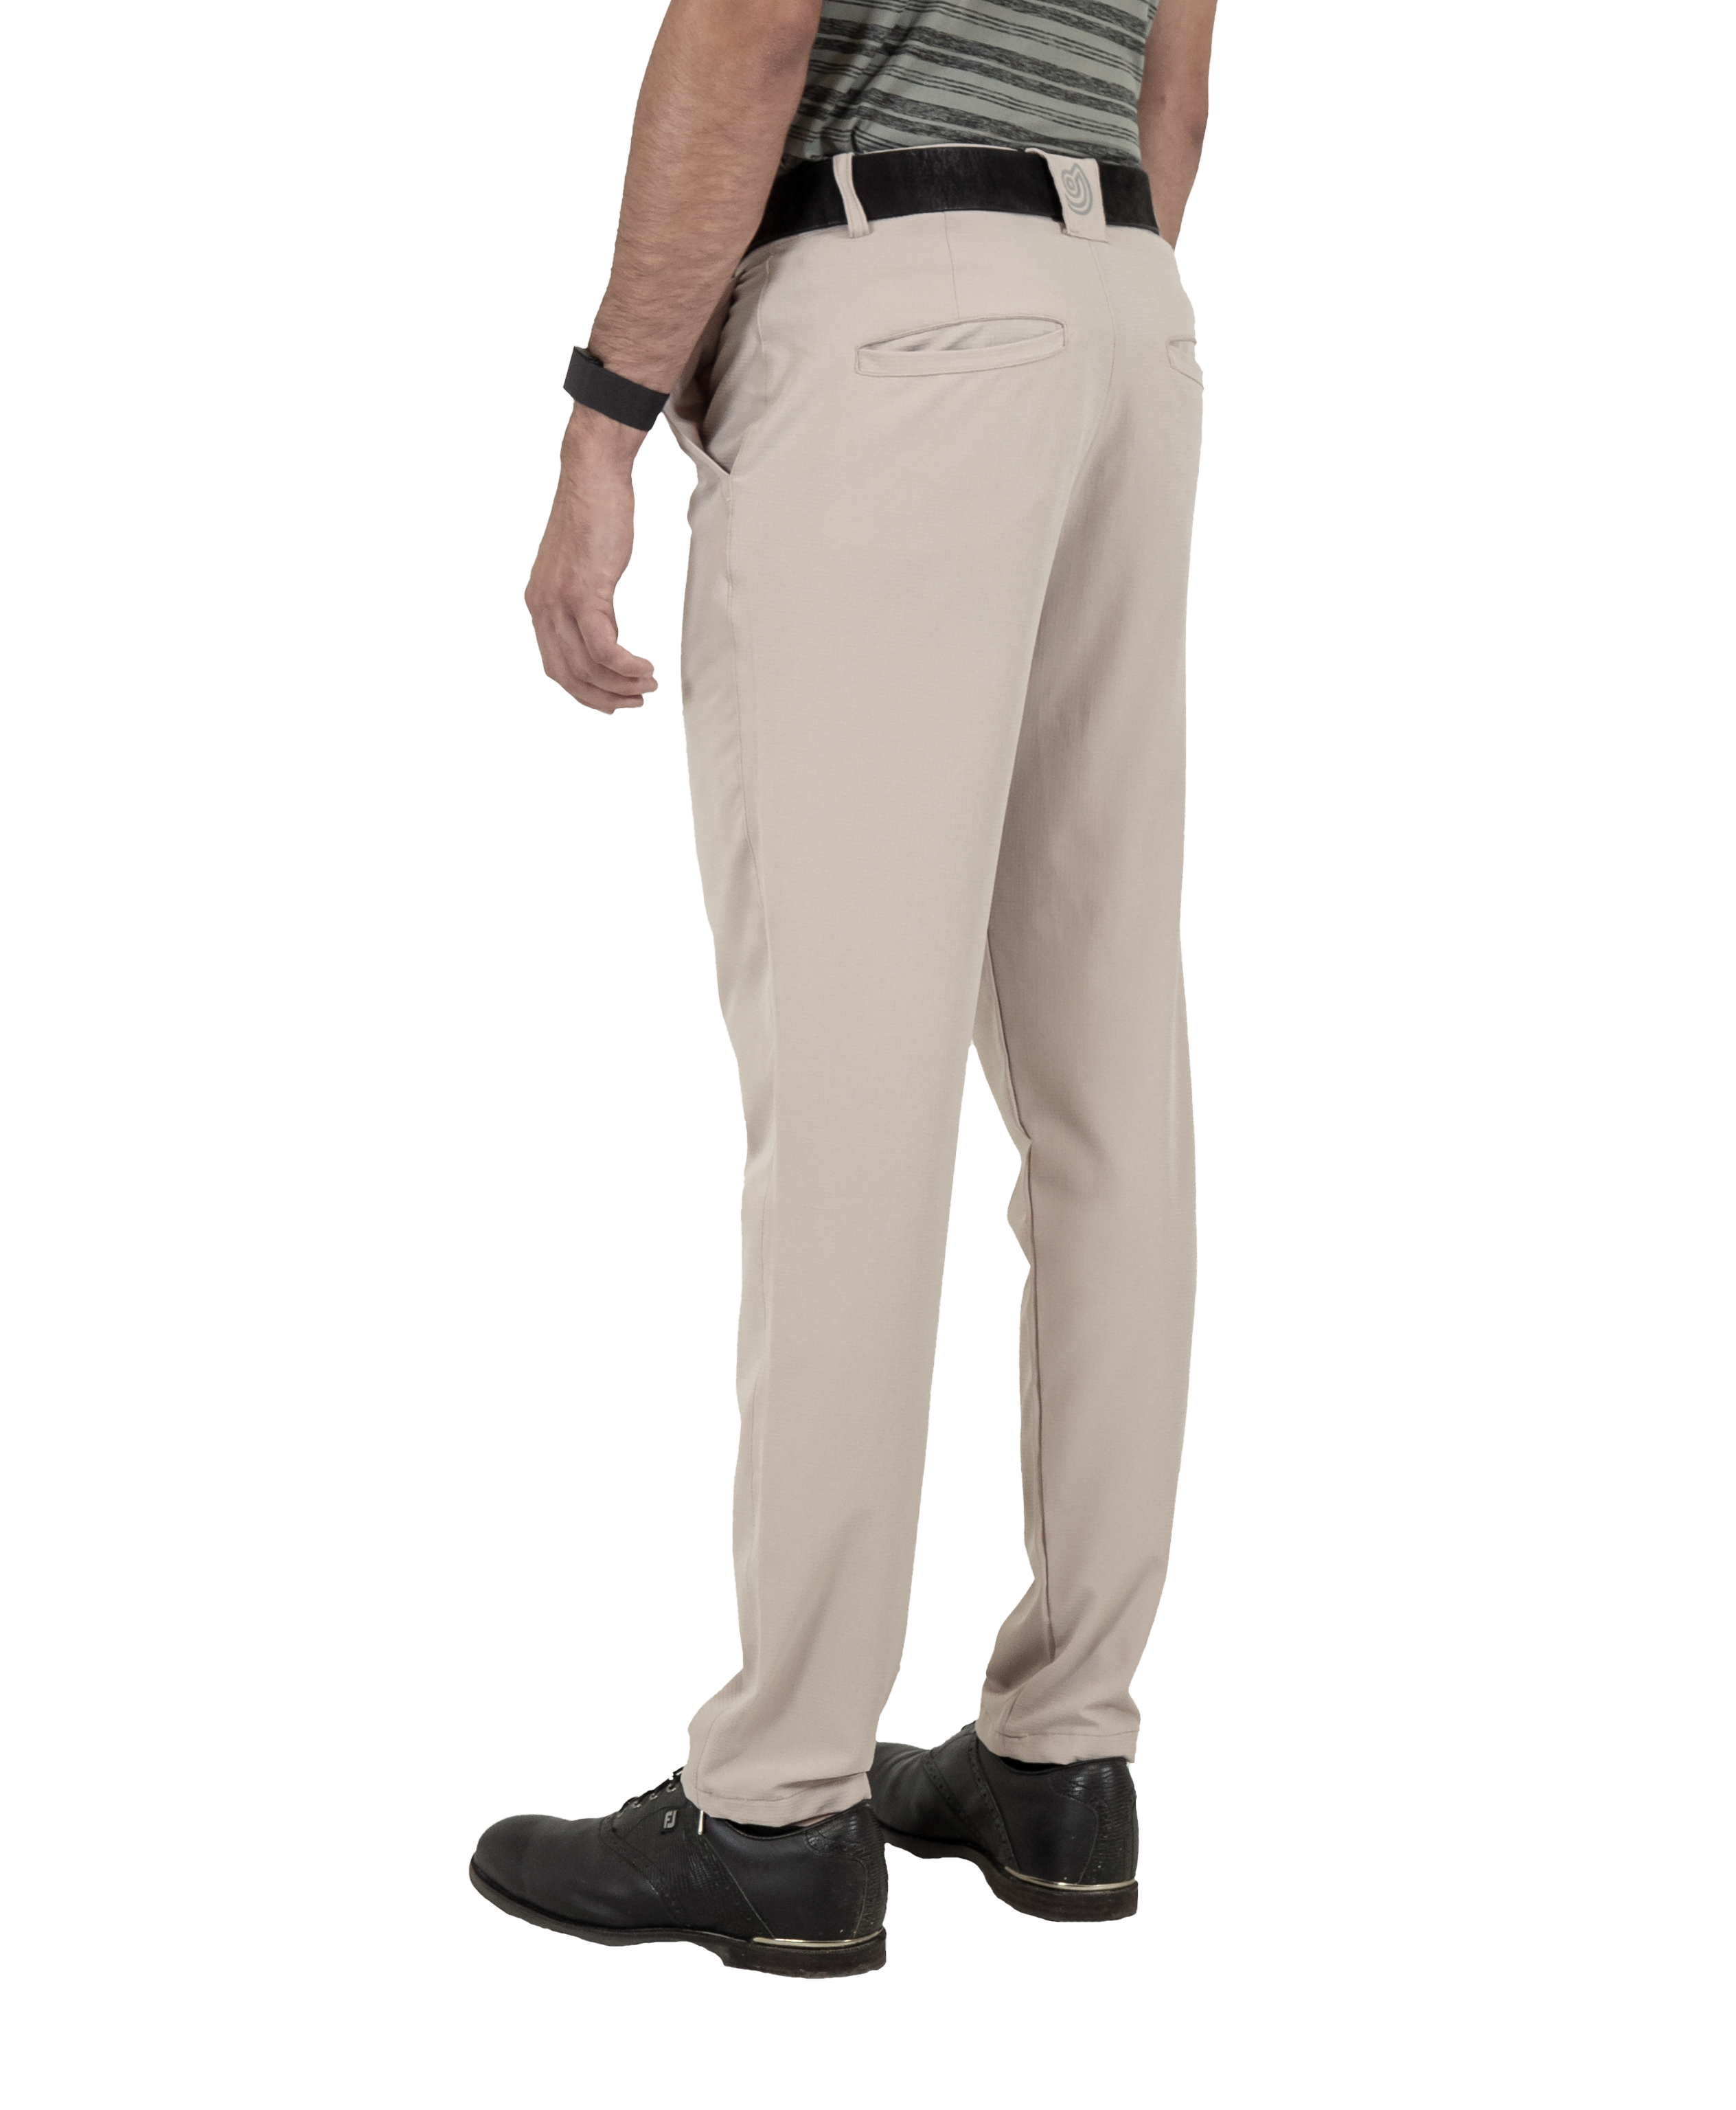 Cenith Pantalón para Golf de Hombre con Textura Waffle Beige